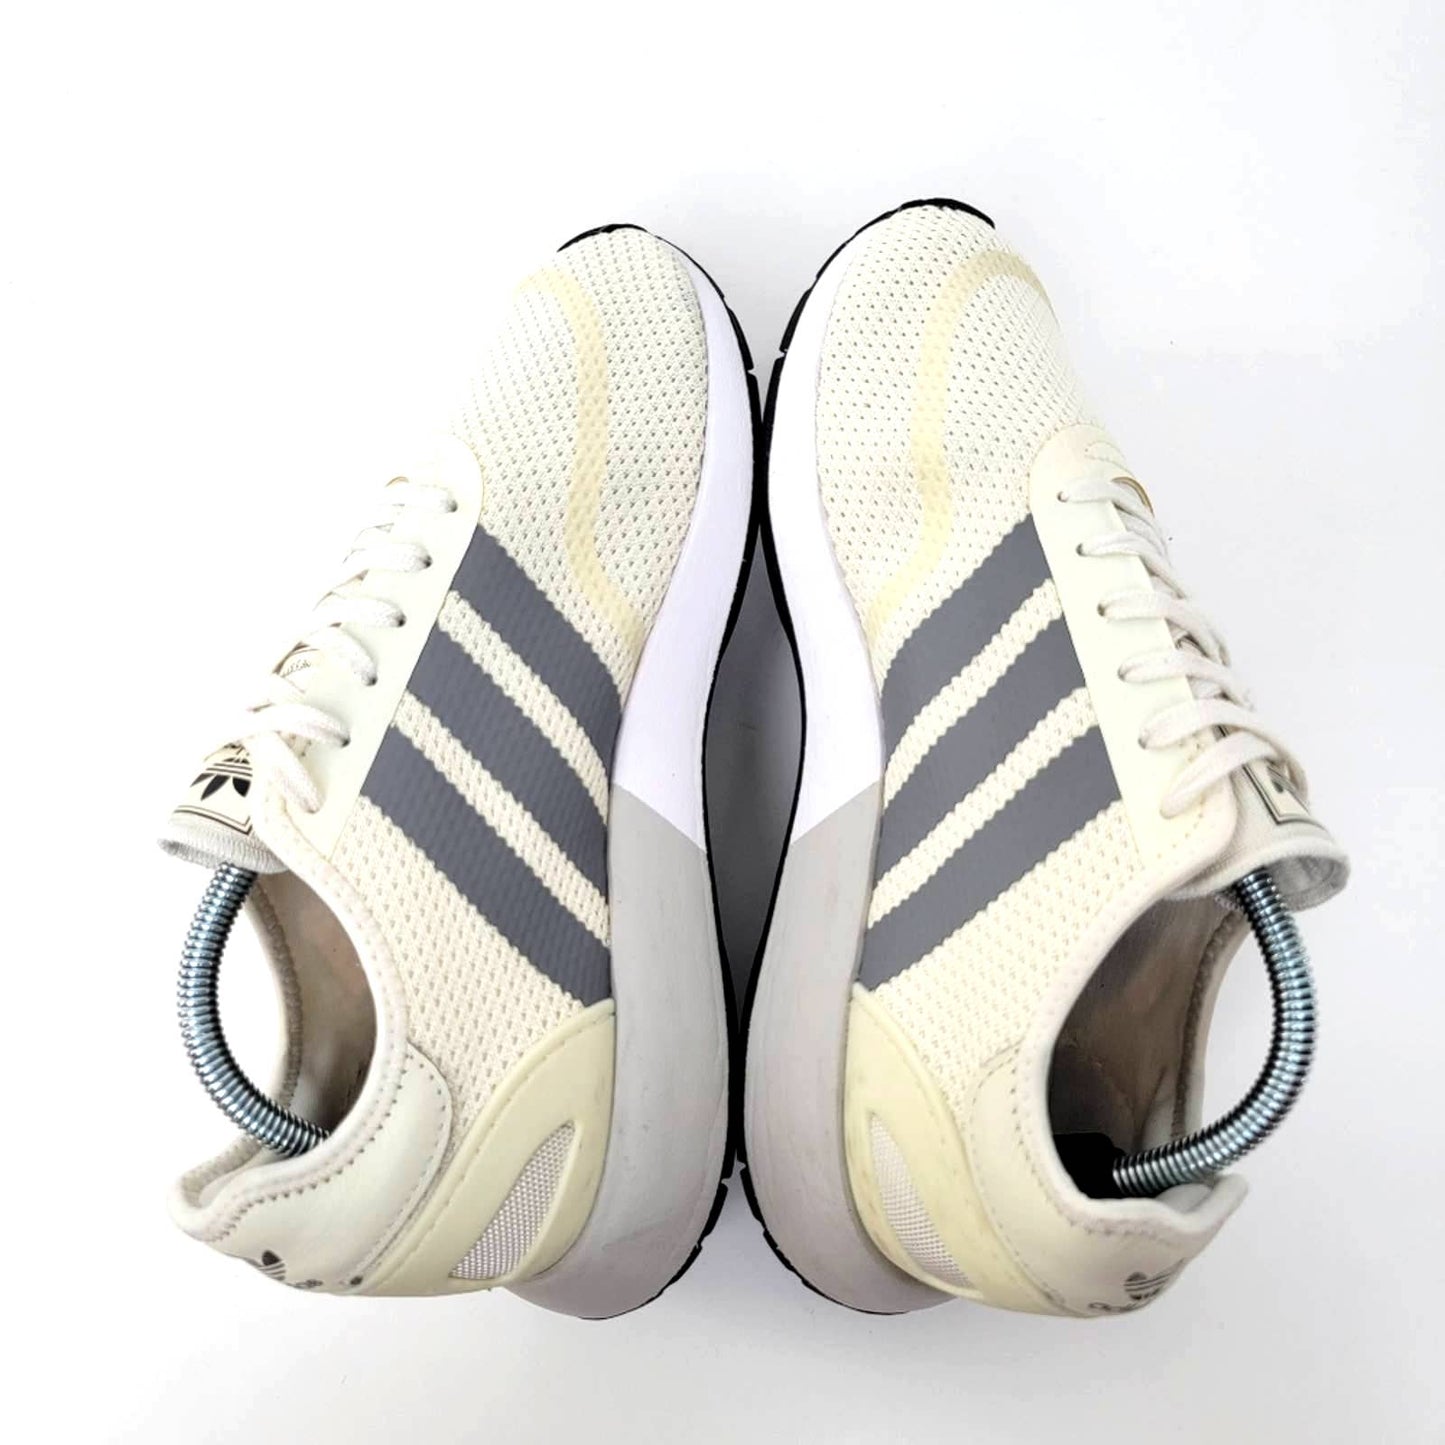 adidas N-5923 'Grey Three' Running Sneakers - 9/10